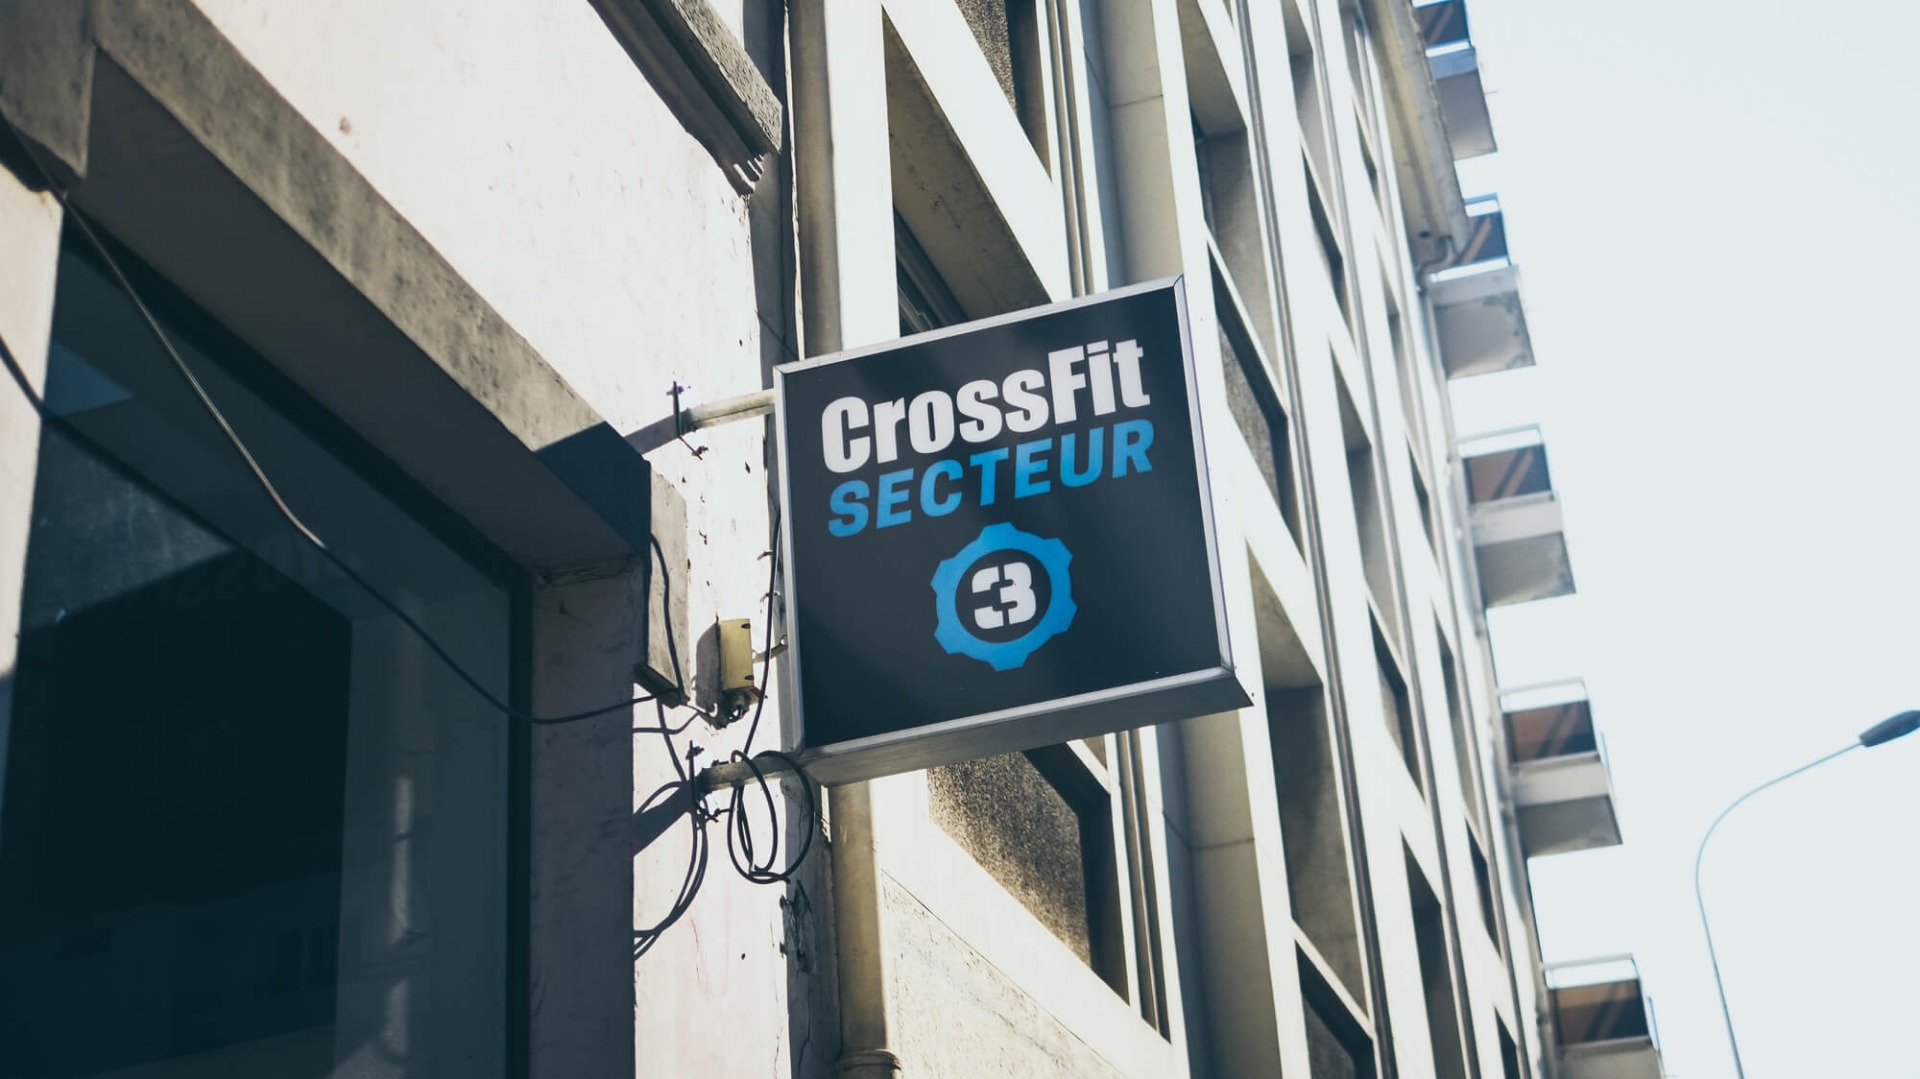 Installation de système Bose dans la salle de CrossFit Secteur 3 Lyon